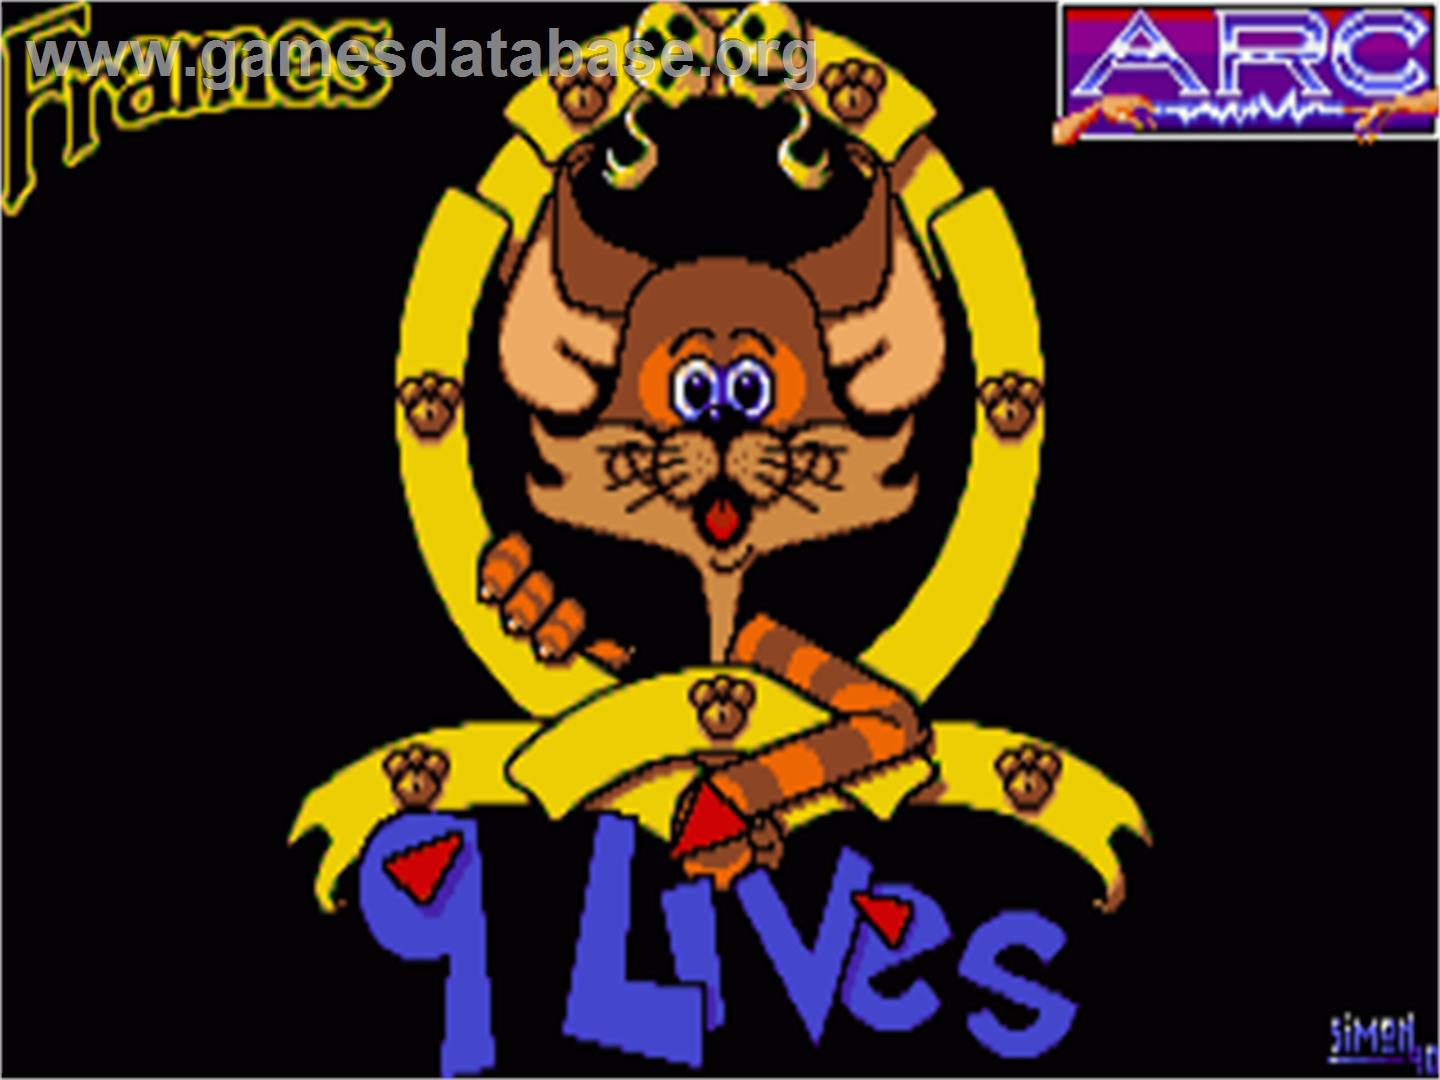 9 Lives - Commodore Amiga - Artwork - Title Screen